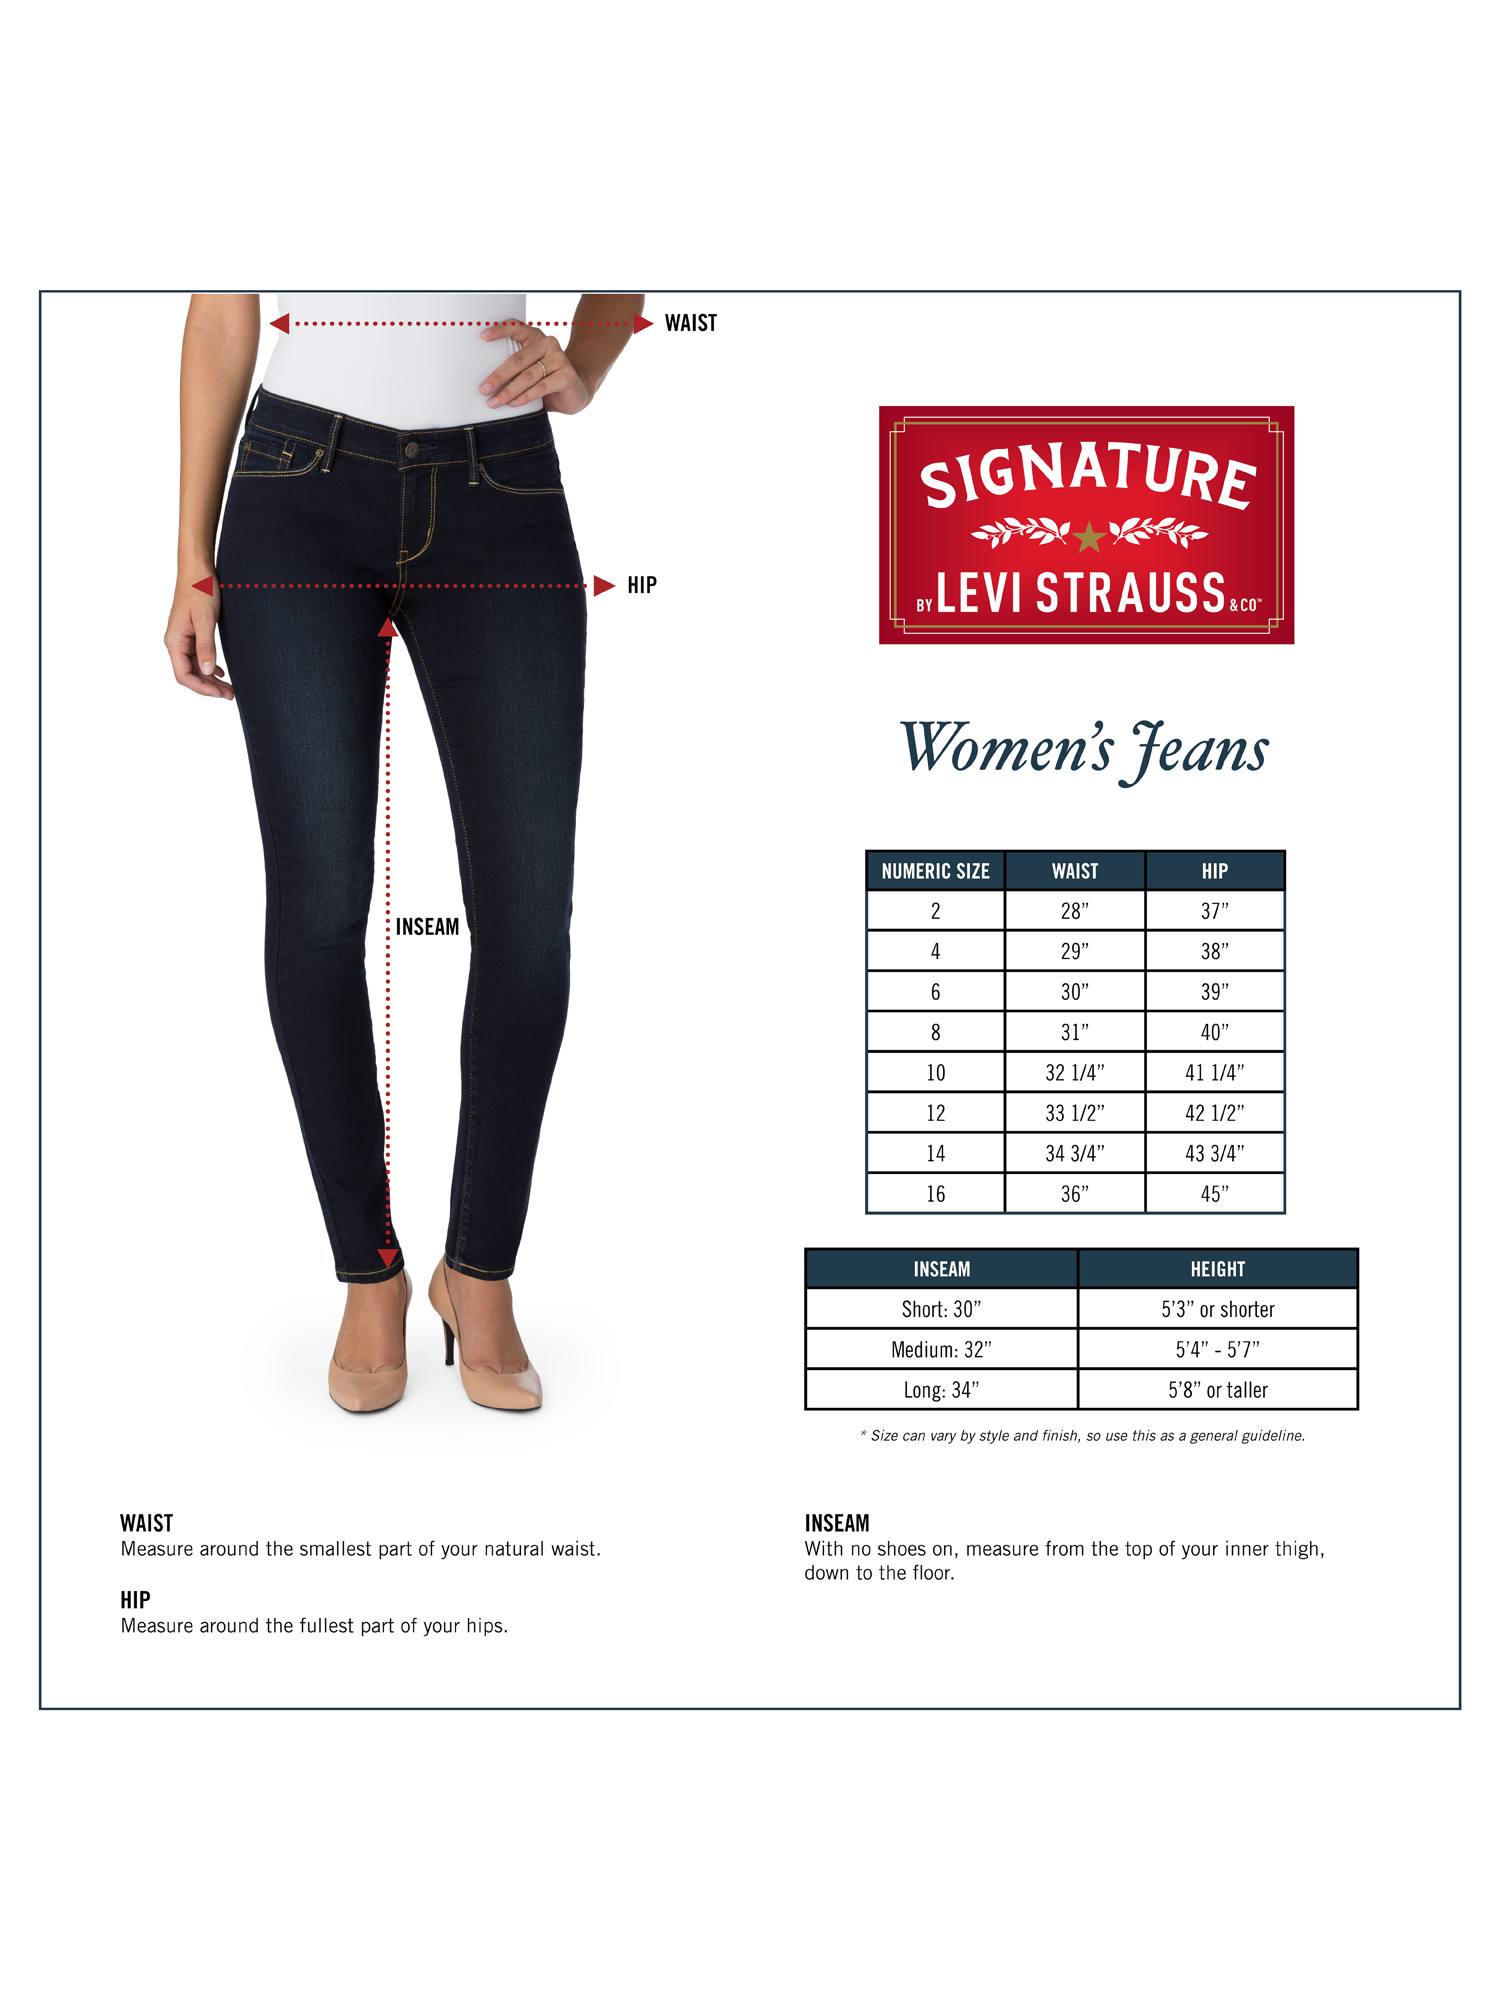 levis jeans measurement chart